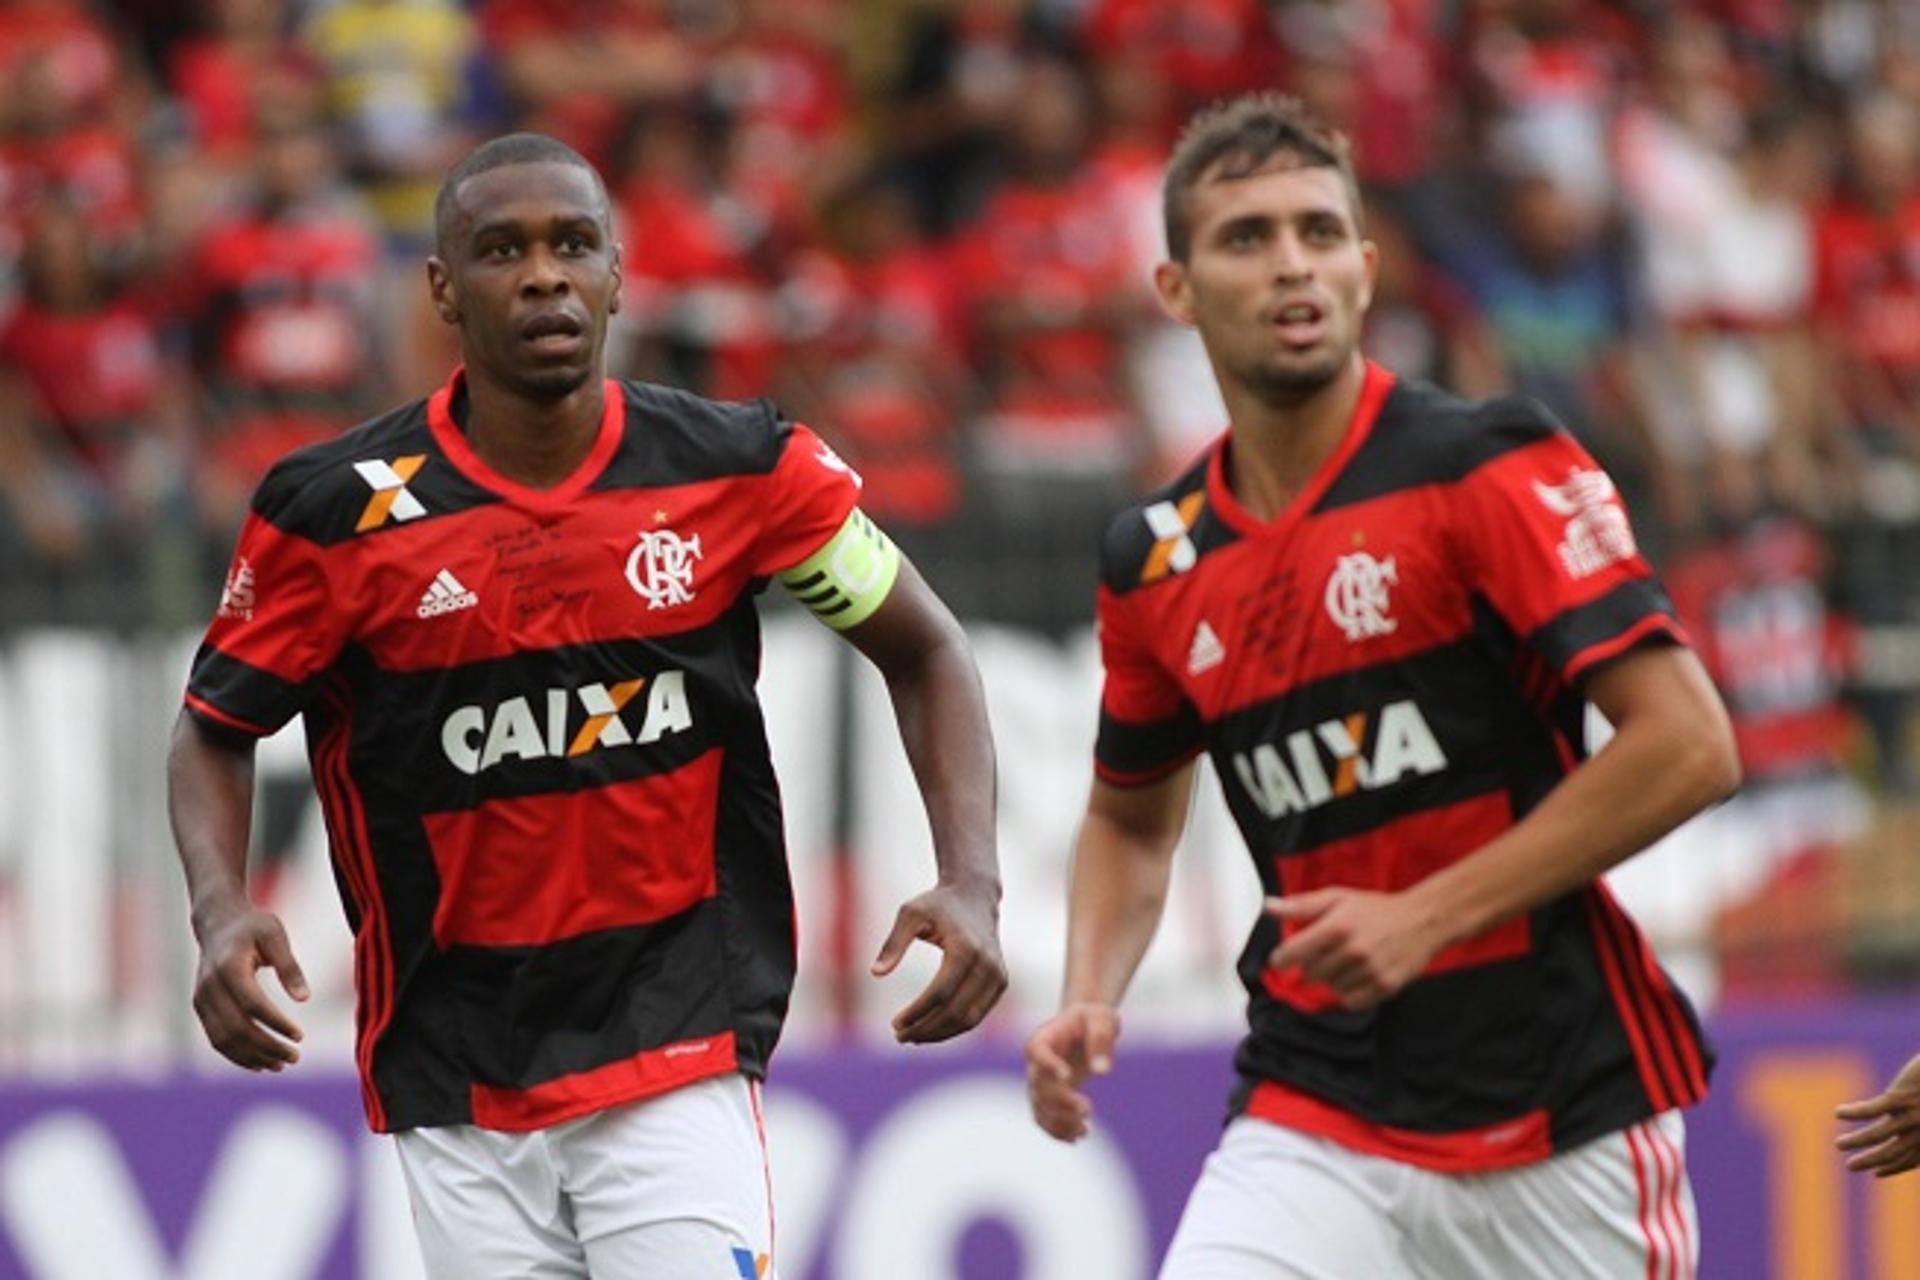 Léo Duarte recebeu orientação de Juan (Gilvan de Souza / Flamengo)